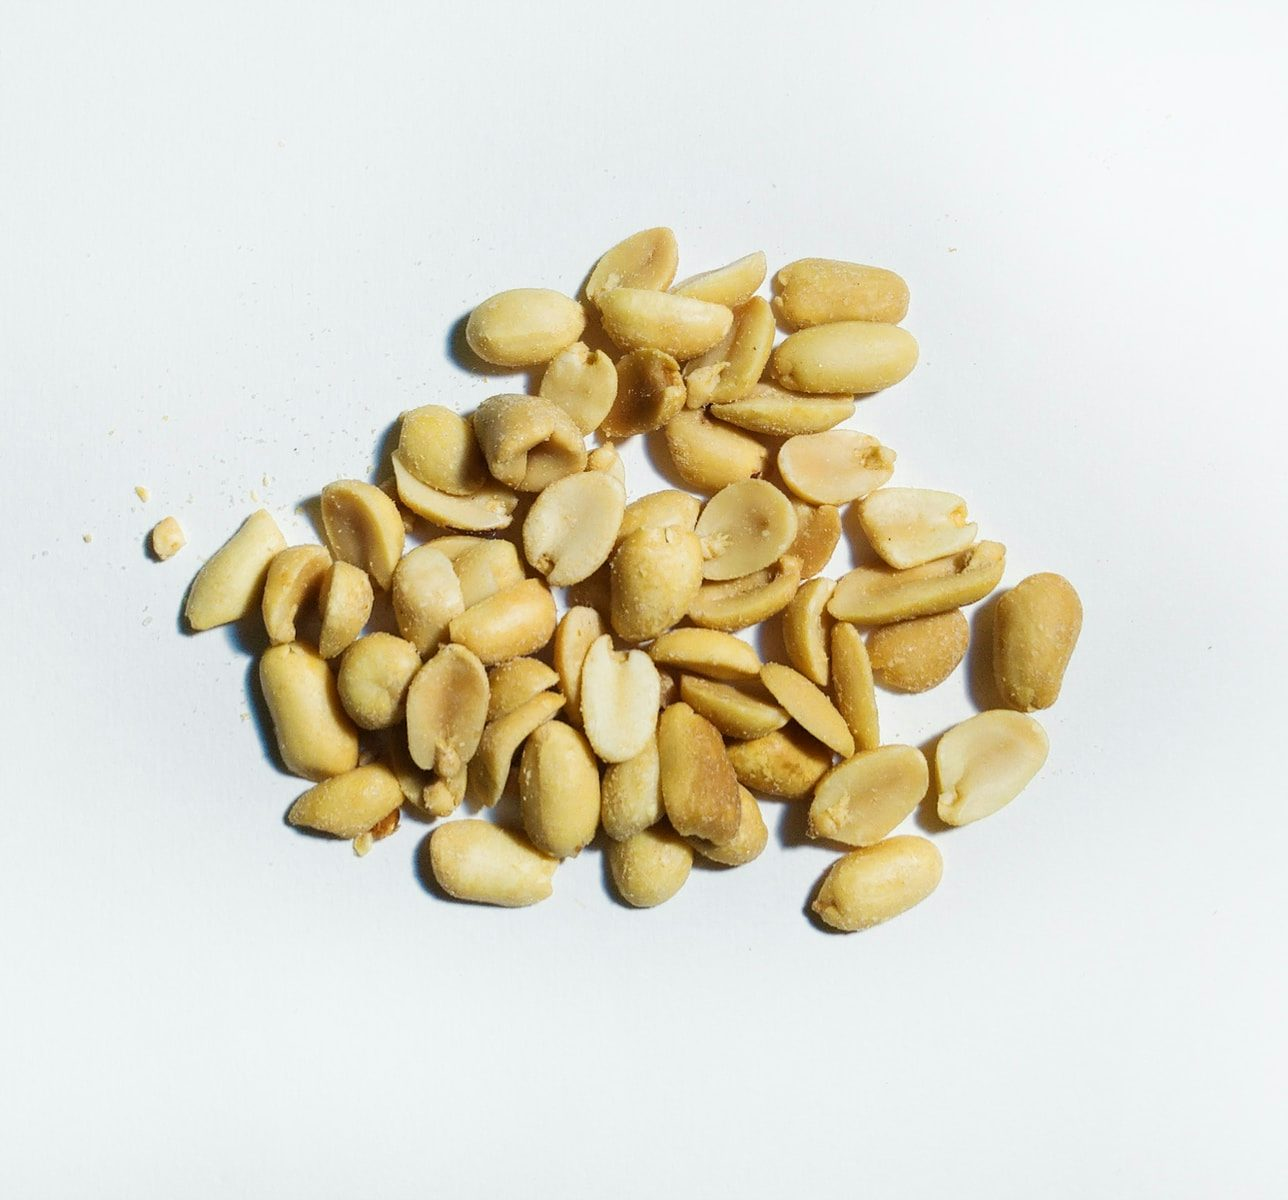 Peanuts milling